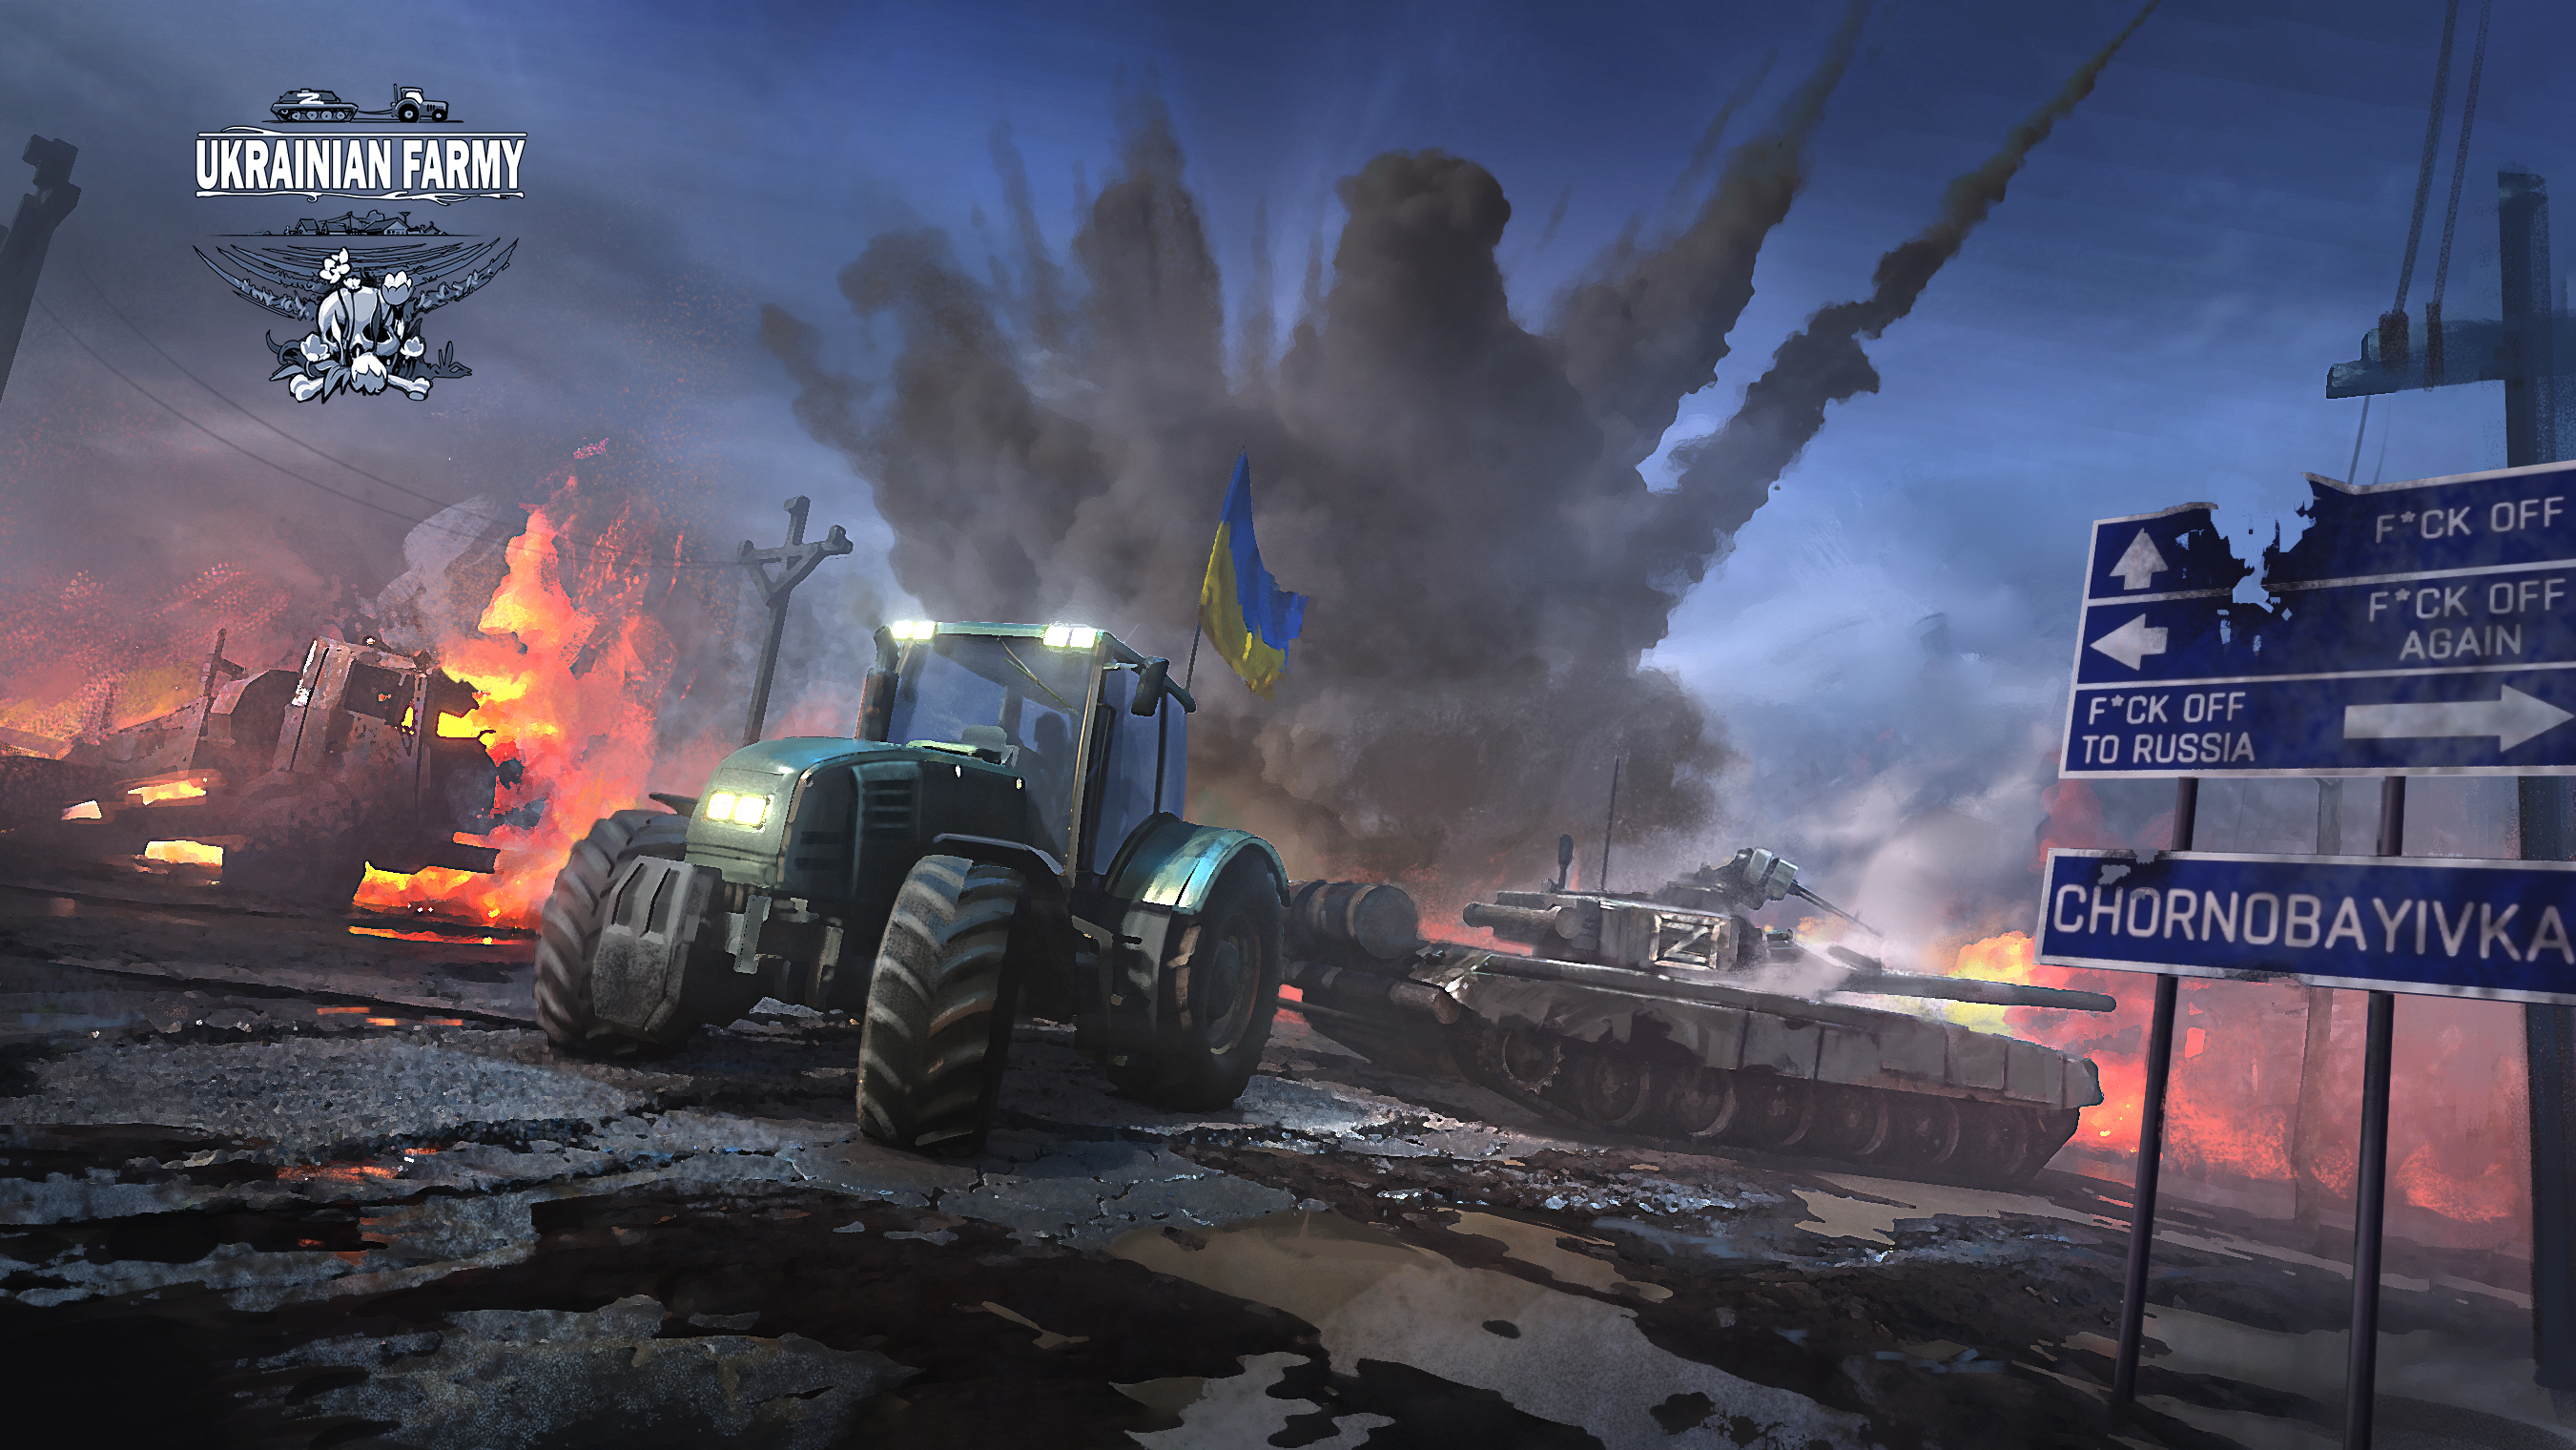 Ukrainian Farmy - Ukraina walczy nawet w grach